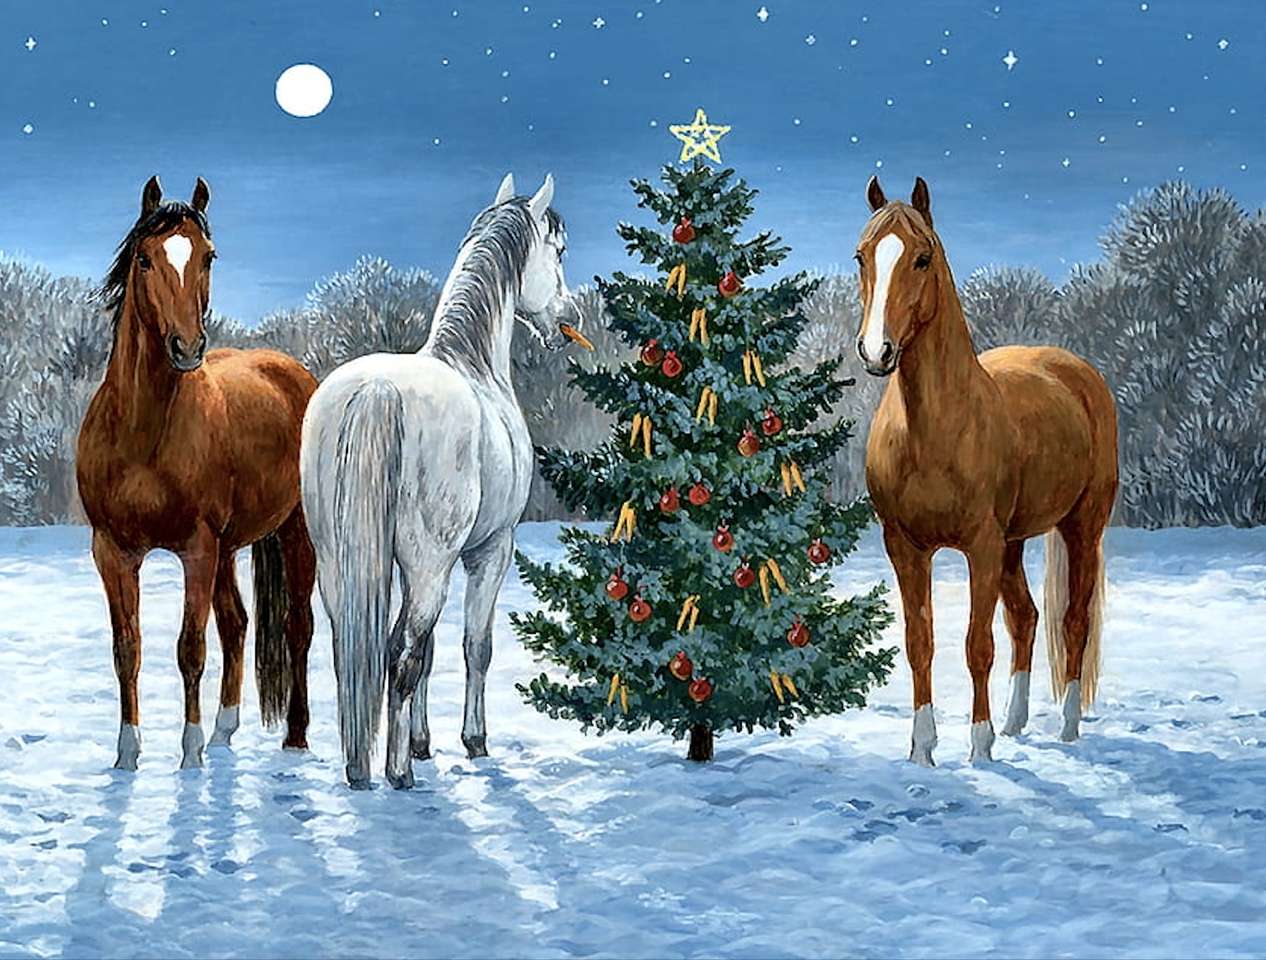 Extra Weihnachtsbaum für Tiere, eine schöne Geste der Erinnerung Online-Puzzle